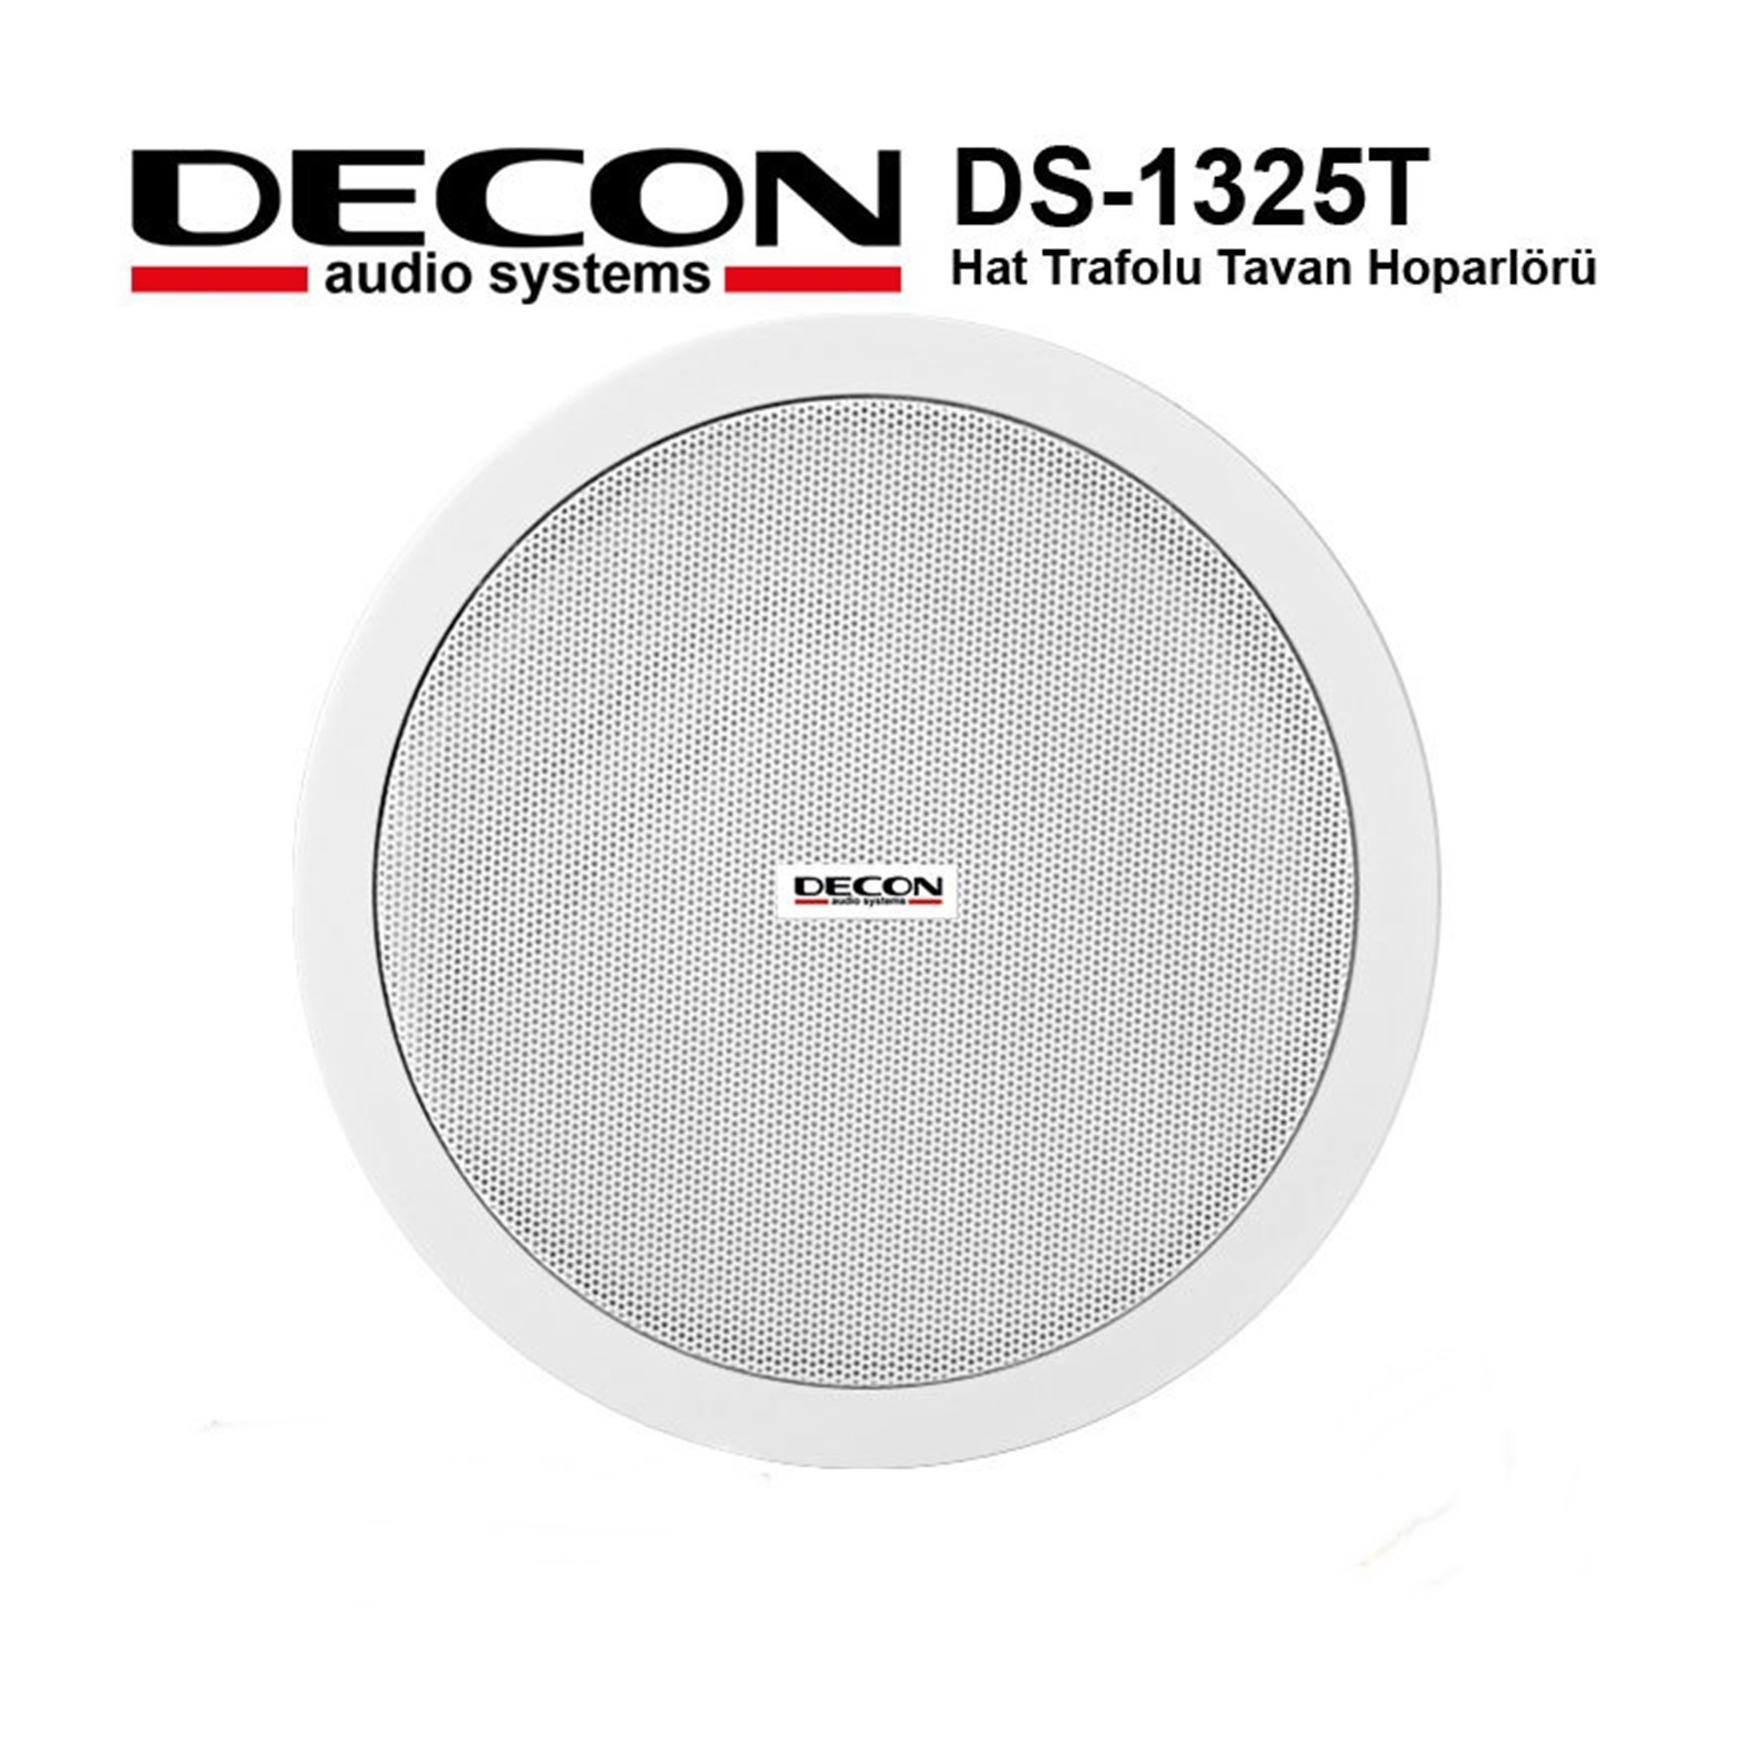 DECON DS-1325T Decon